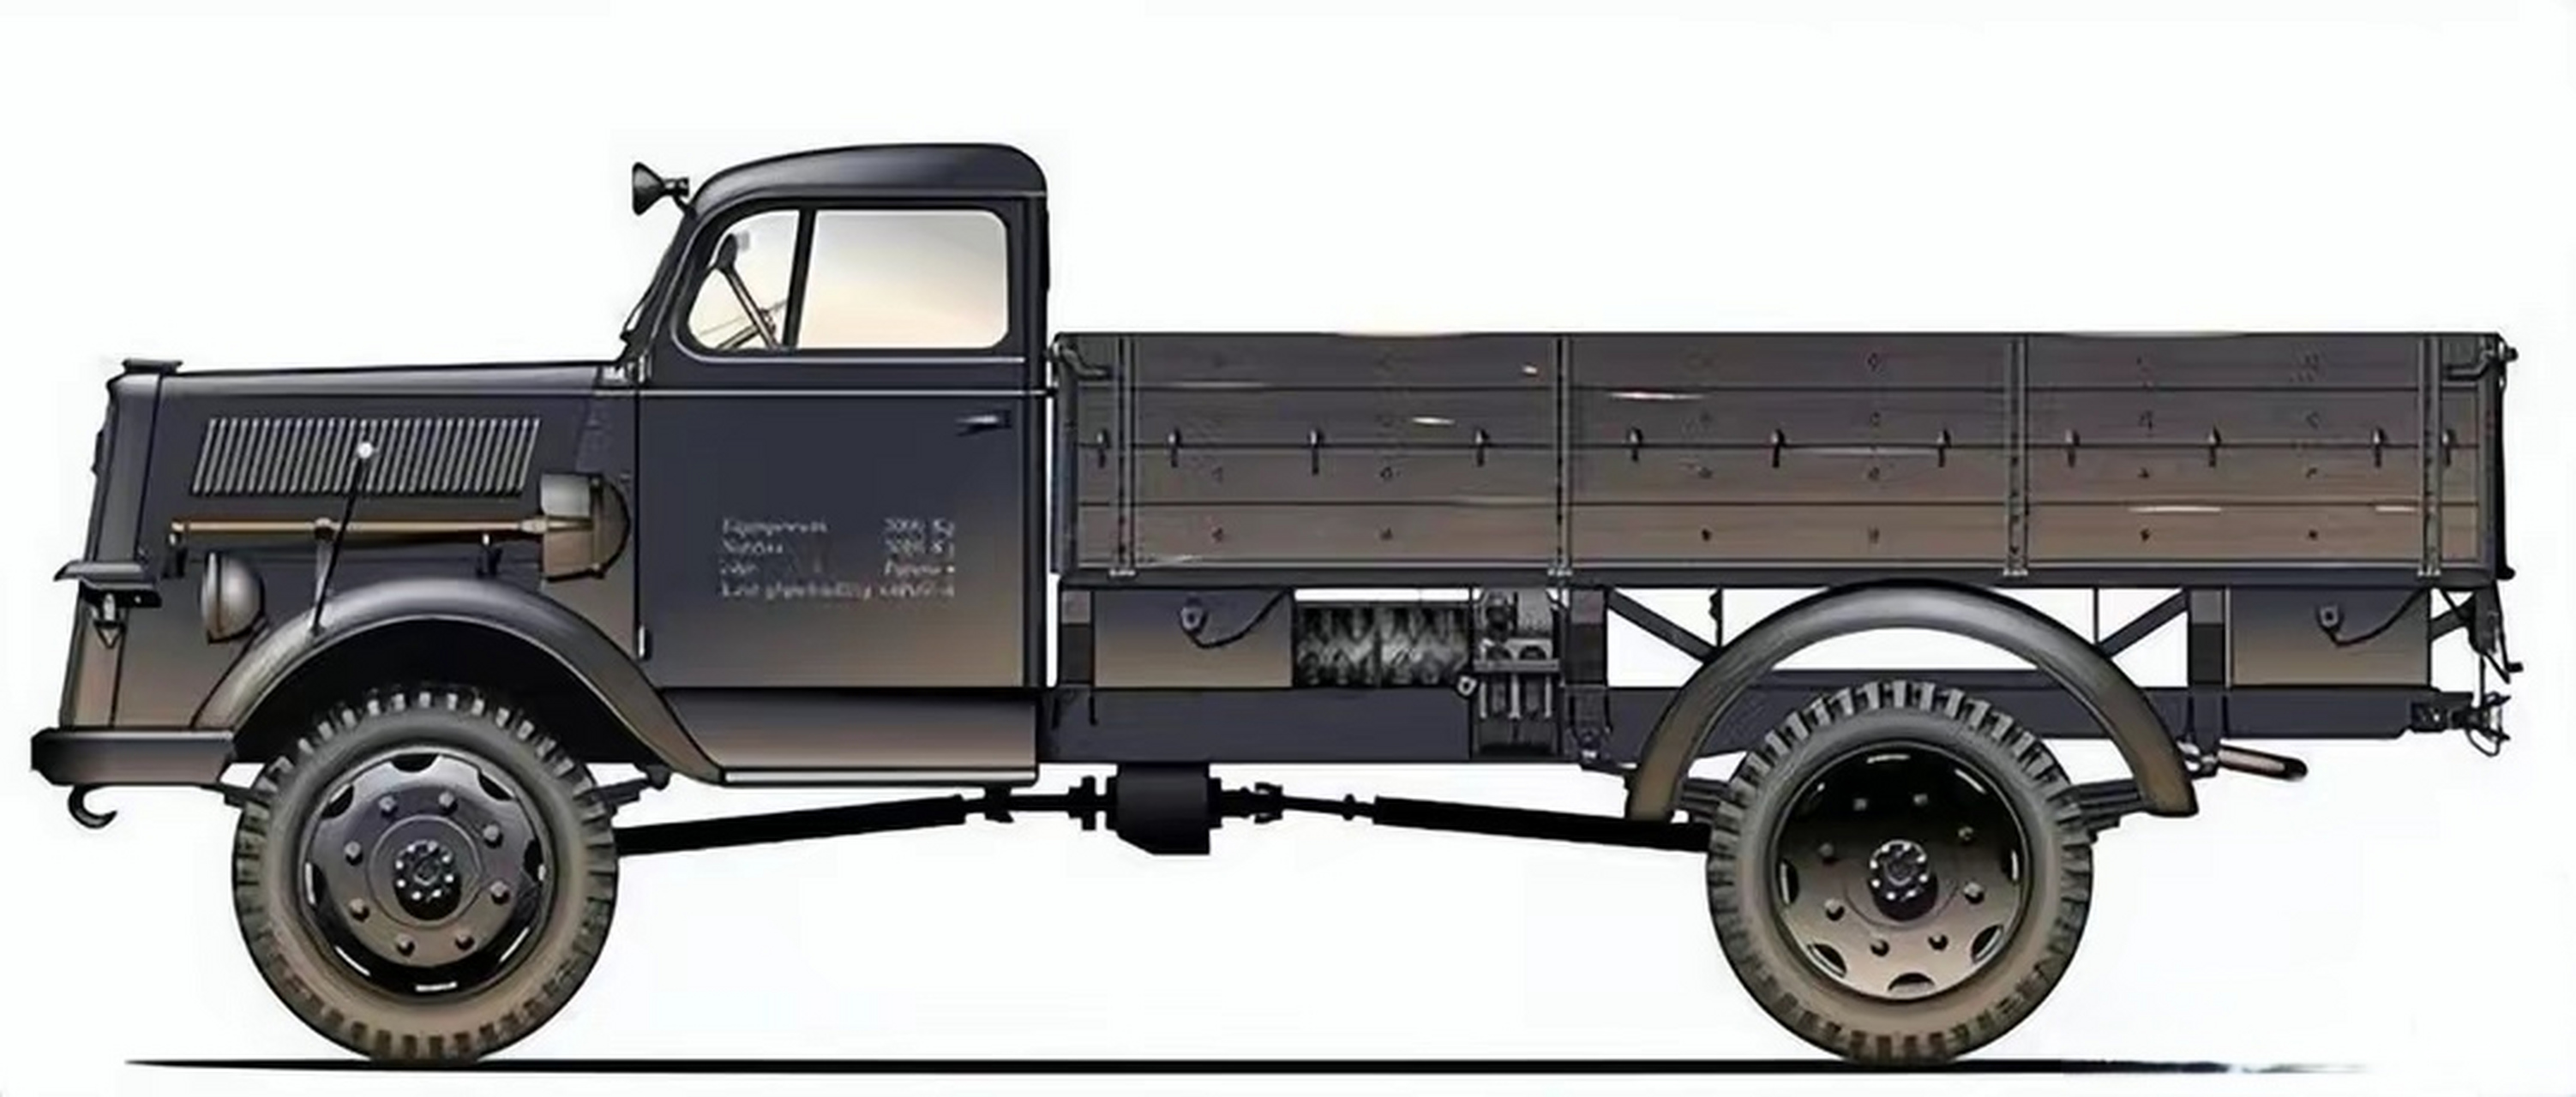 5吨)卡车,是二战德军使用的一款轻型运兵卡车